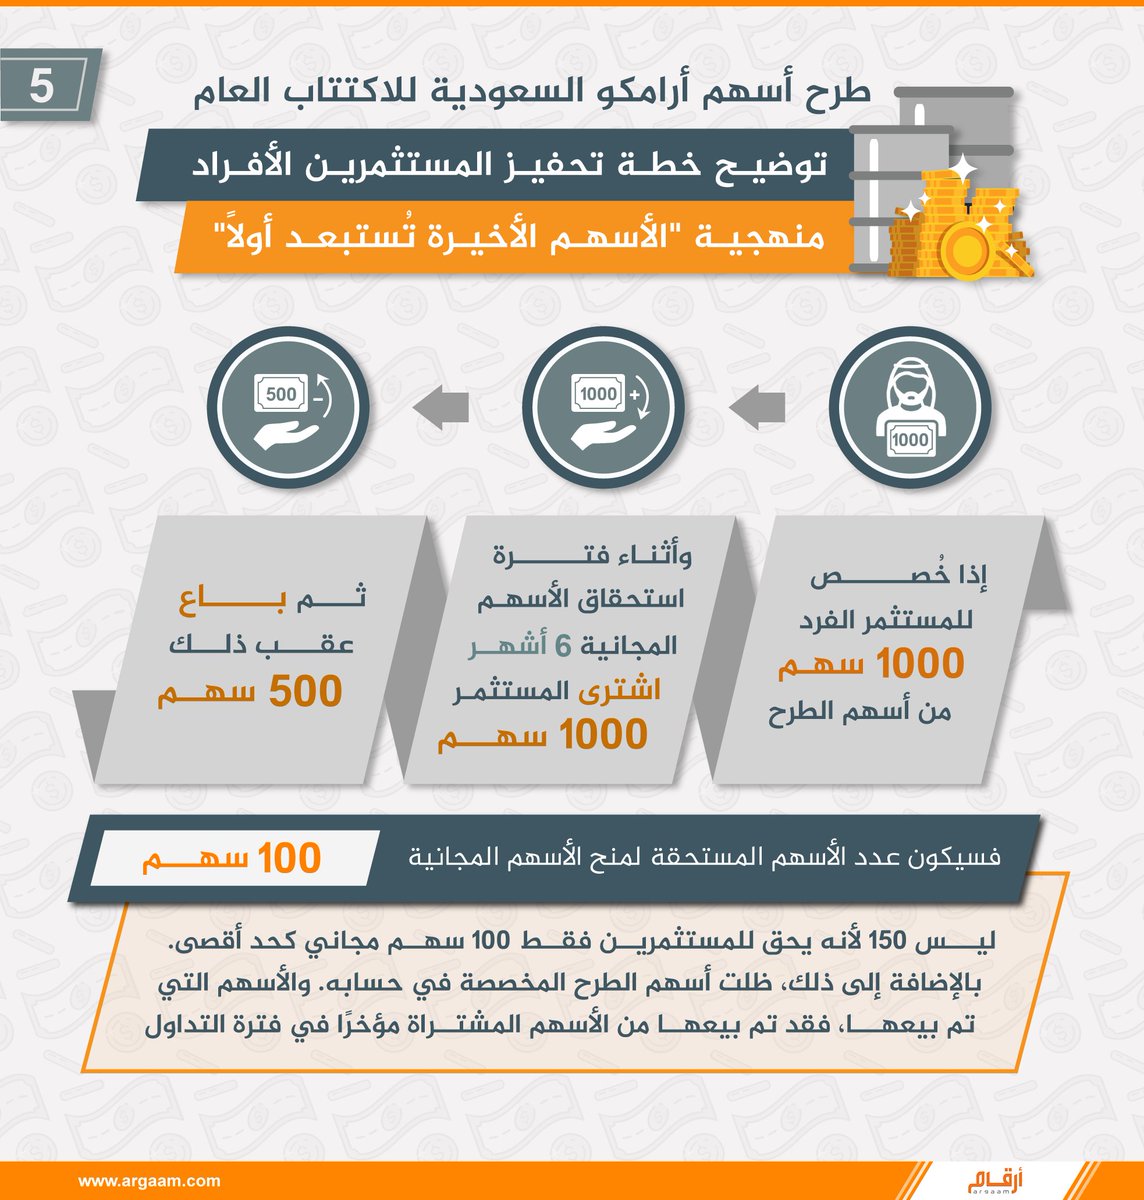 بوابة أرقام المالية على تويتر طرح أسهم أرامكو السعودية للاكتتاب